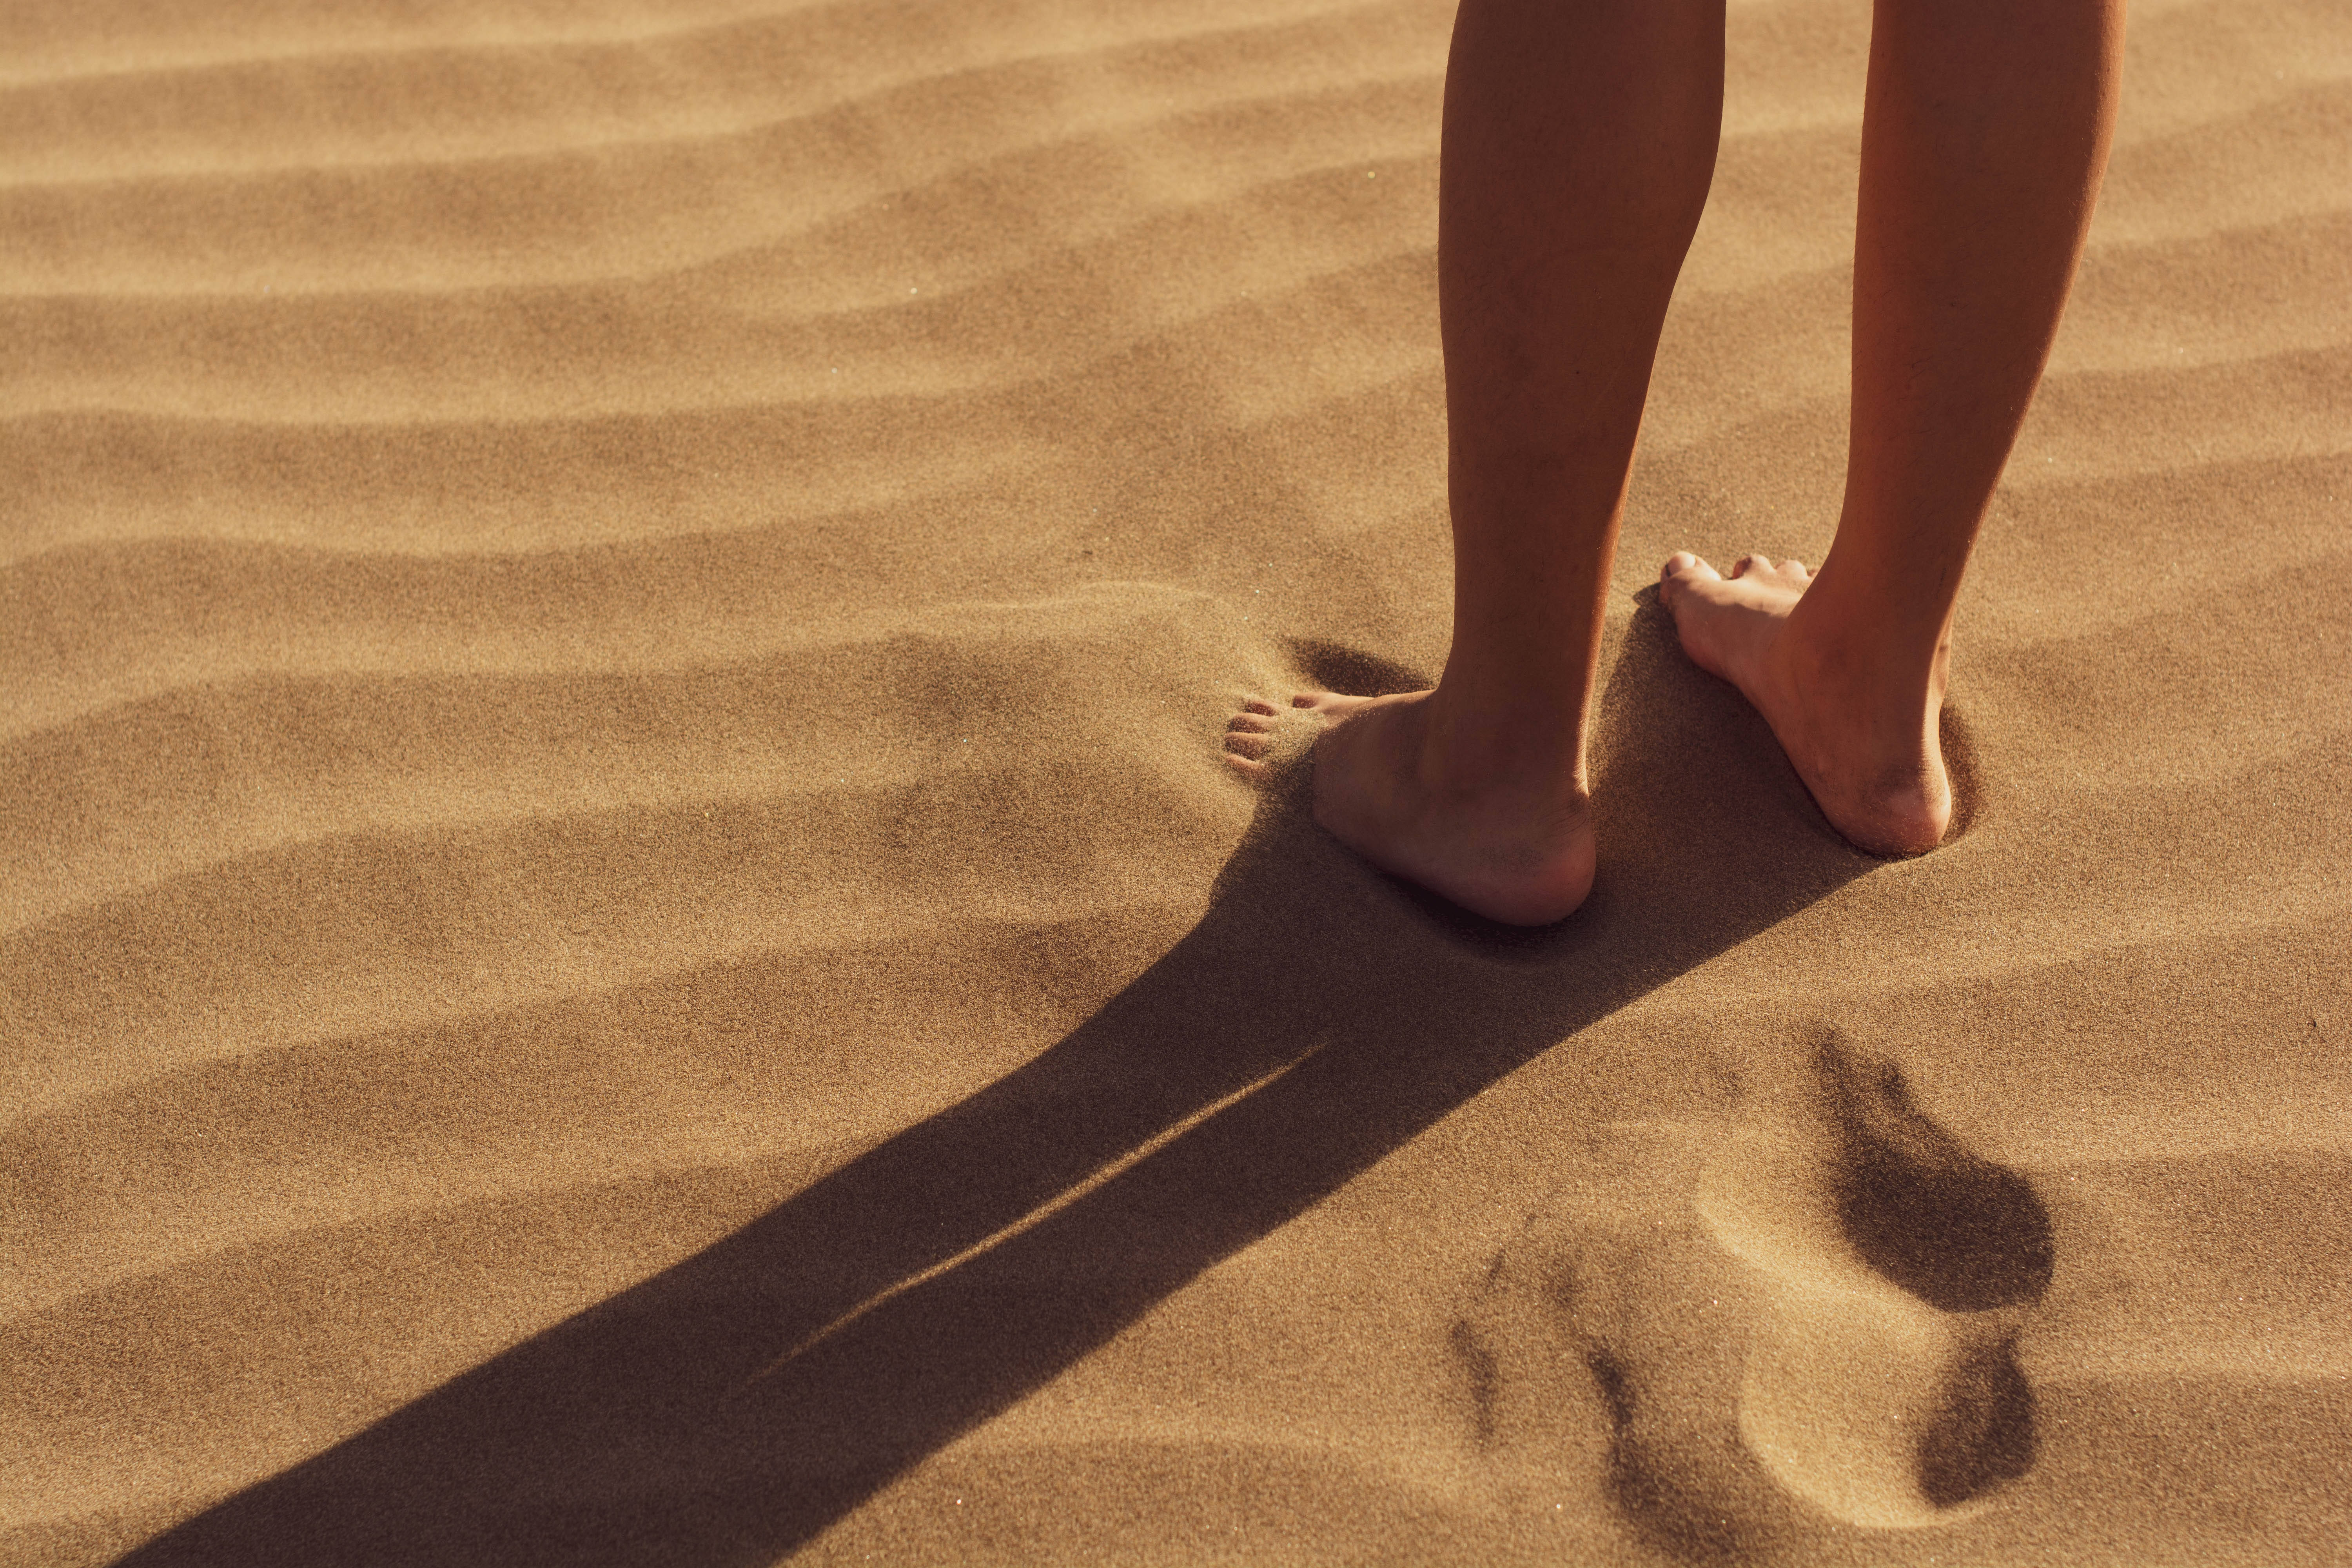 Скучающая нога. Ноги в песке. Женские ноги. Хождение босиком по песку. Горячий песок.